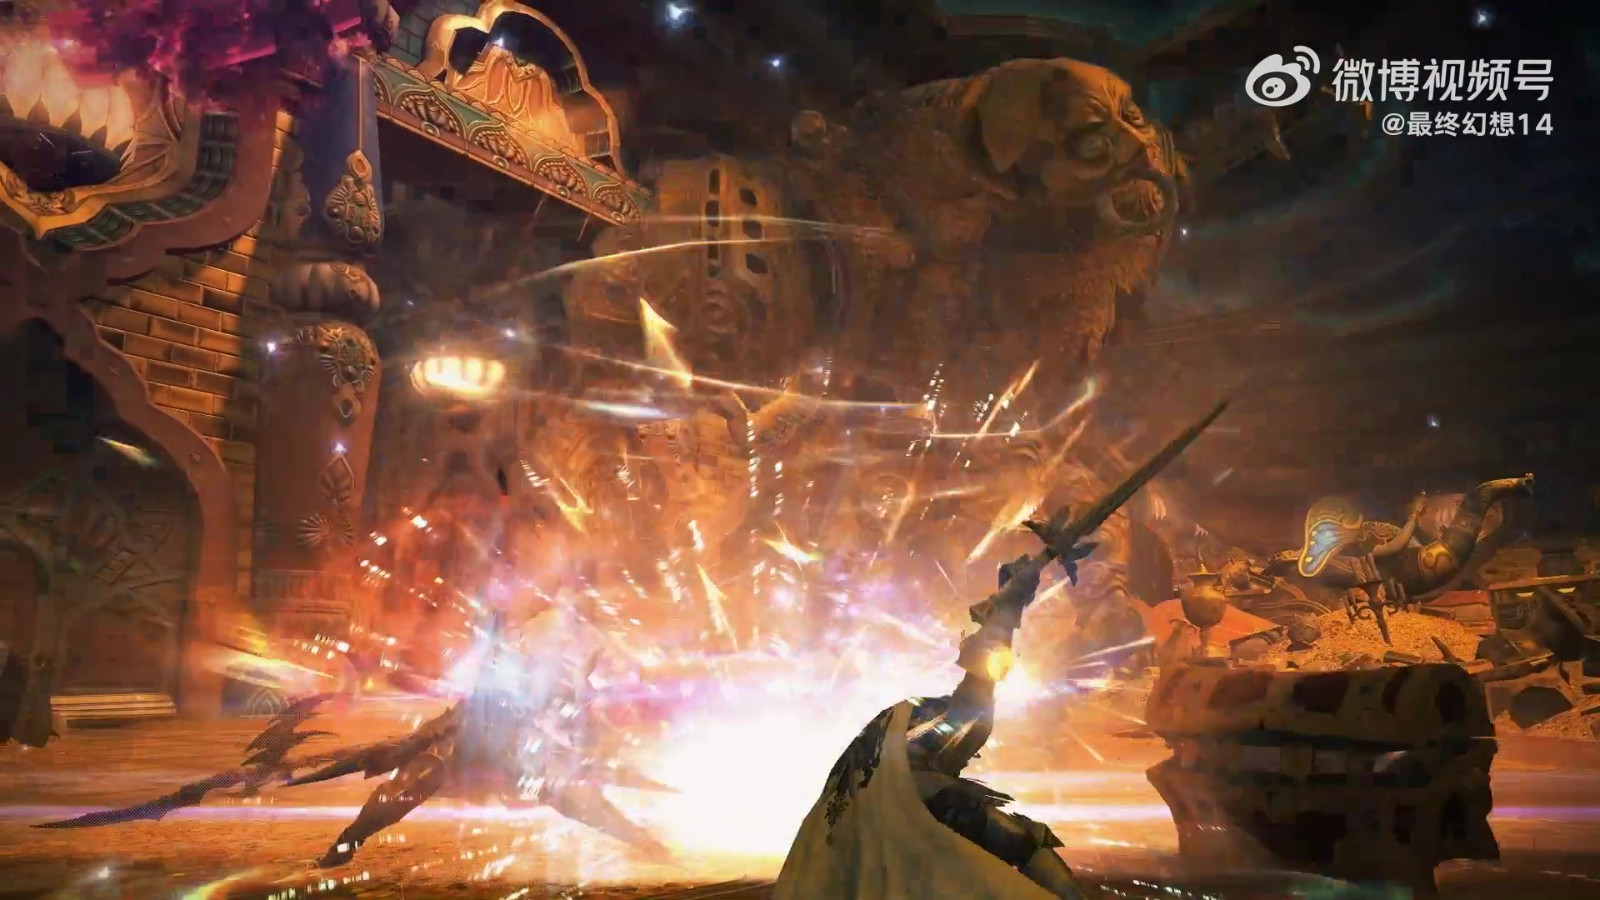 最终幻想14国服6.1版本「崭新的冒险」预告 8月9日上线